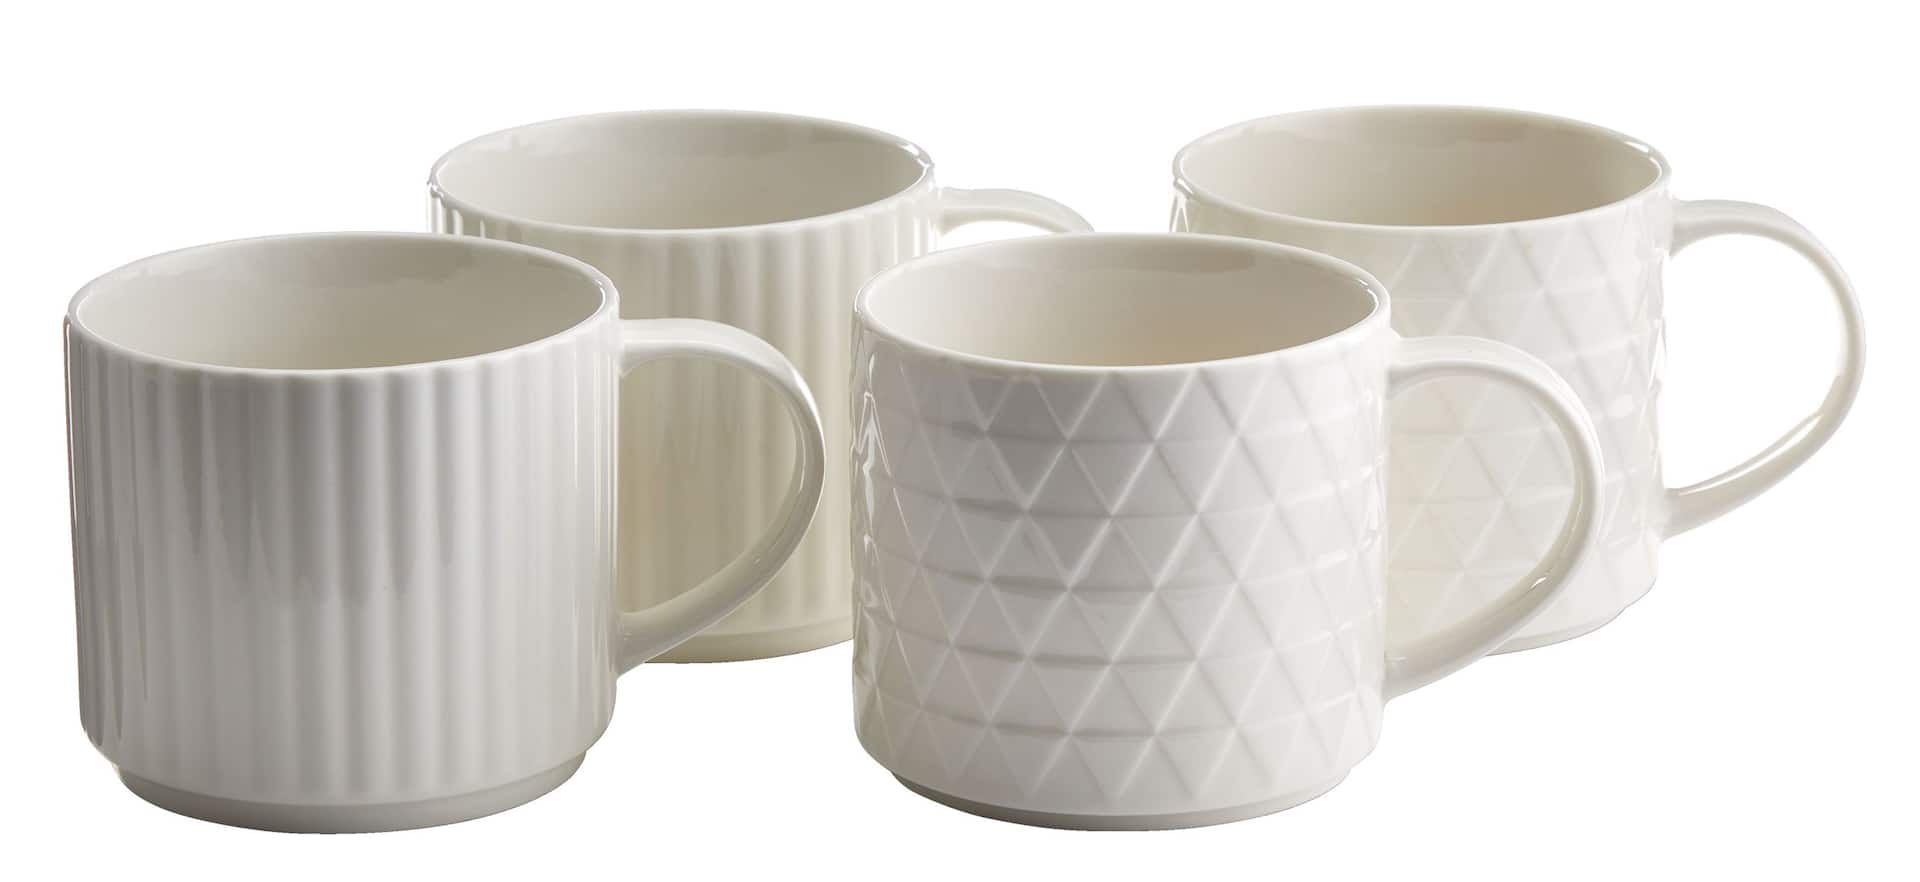 CANVAS Finch 4pc Stoneware Mug Set, Dishwasher Safe, 414-mL, White